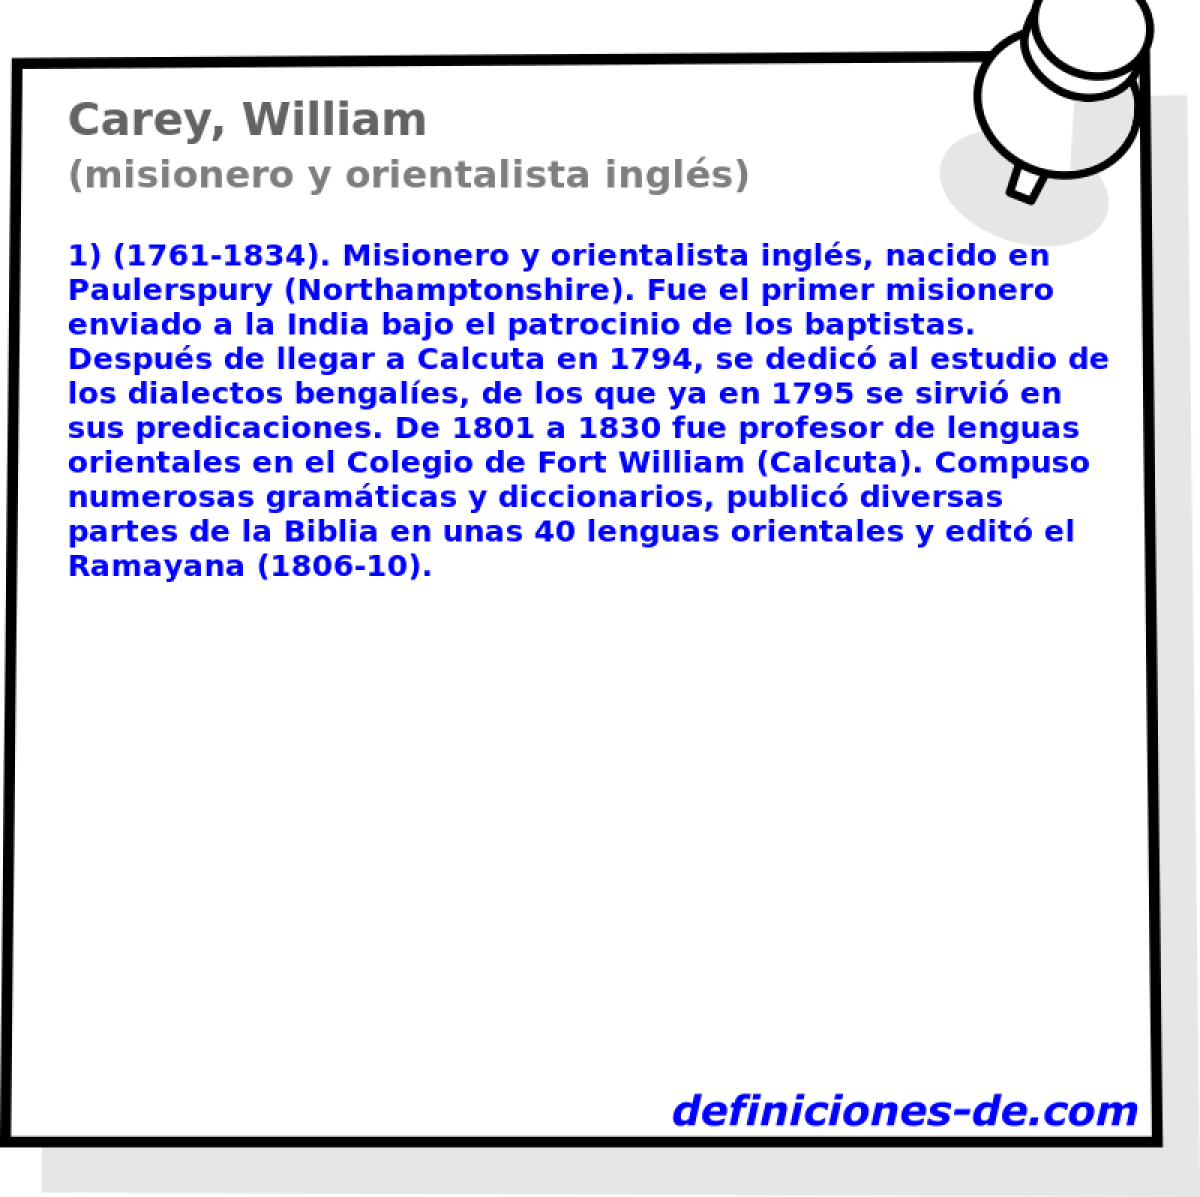 Carey, William (misionero y orientalista ingls)